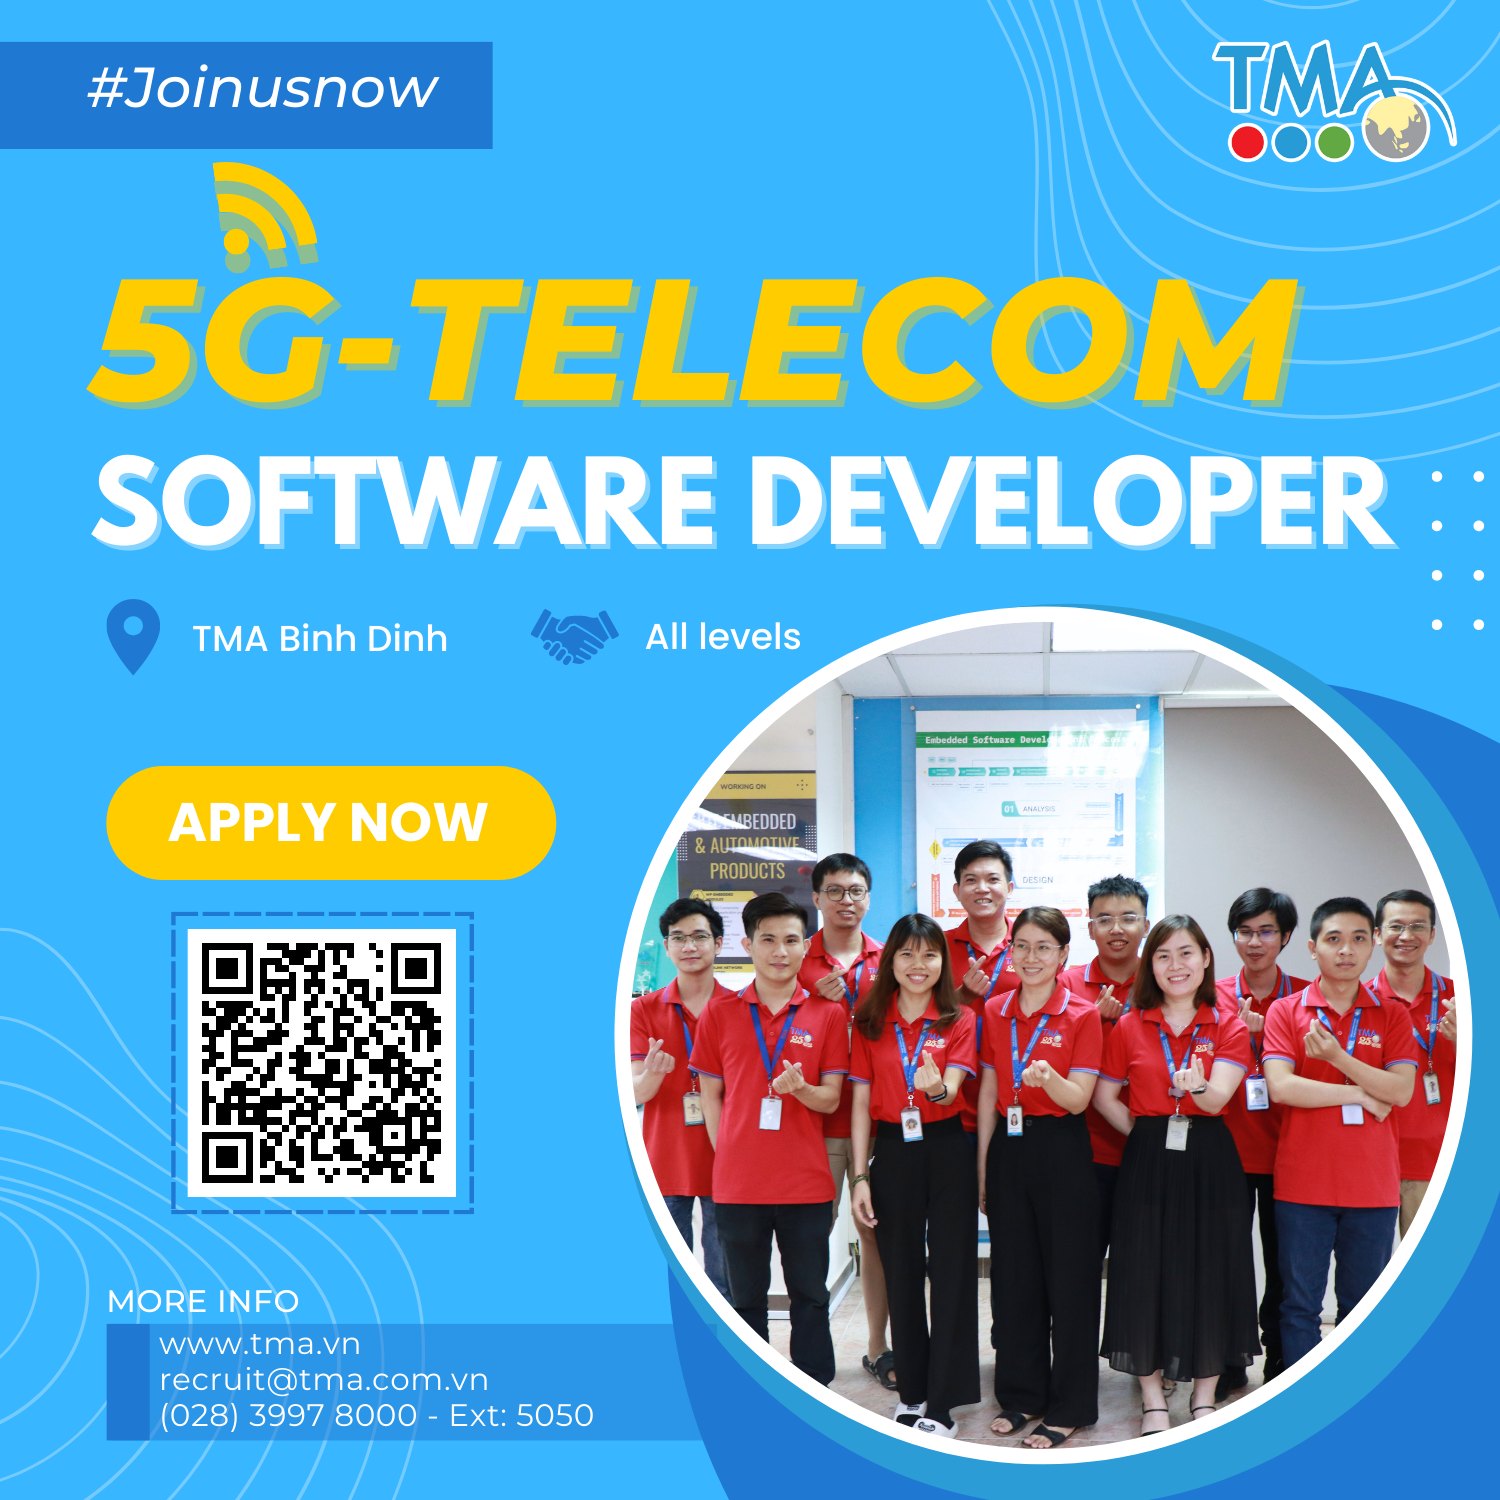 TMA Bình Định tìm kiếm kỹ sư 5G-TELECOM (All level)